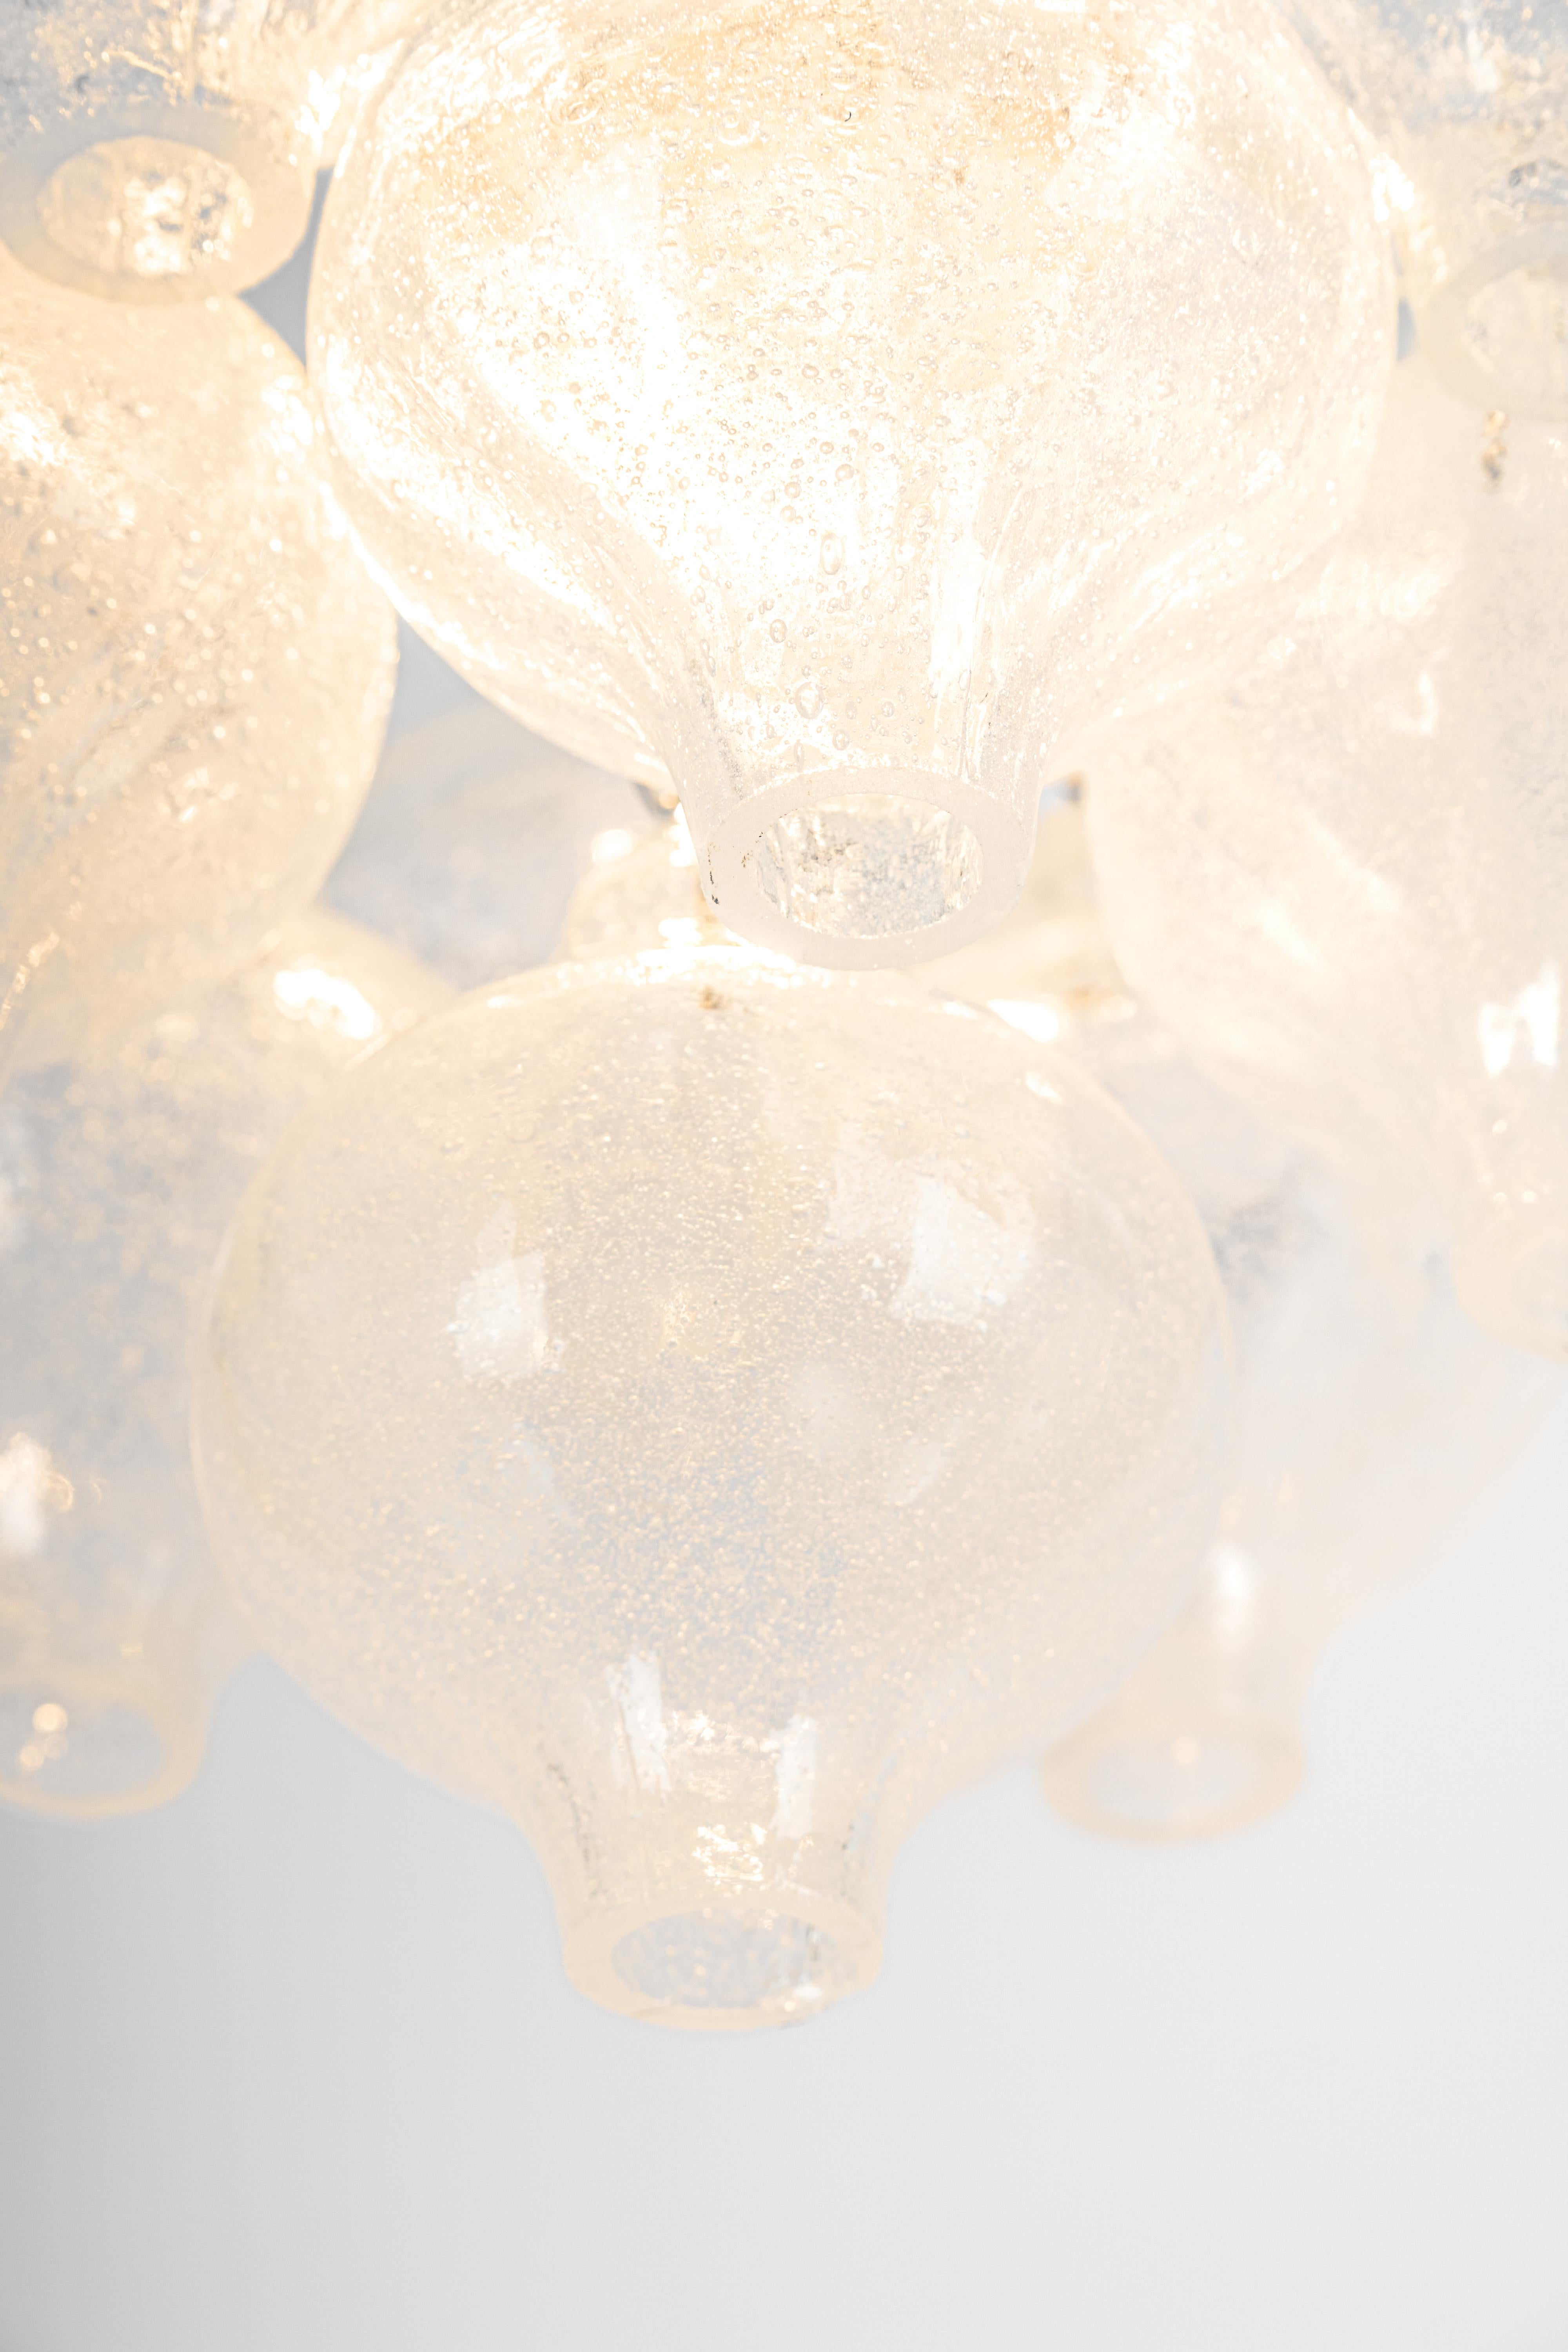 1 of 2 Petite merveille en forme d'oignon -Tulipan glass flush mount. Des verres soufflés à la main ont été suspendus à un cadre en métal peint en blanc et à un baldaquin en laiton.
Le meilleur du design des années 1960 par Kalmar, Autriche. Haute